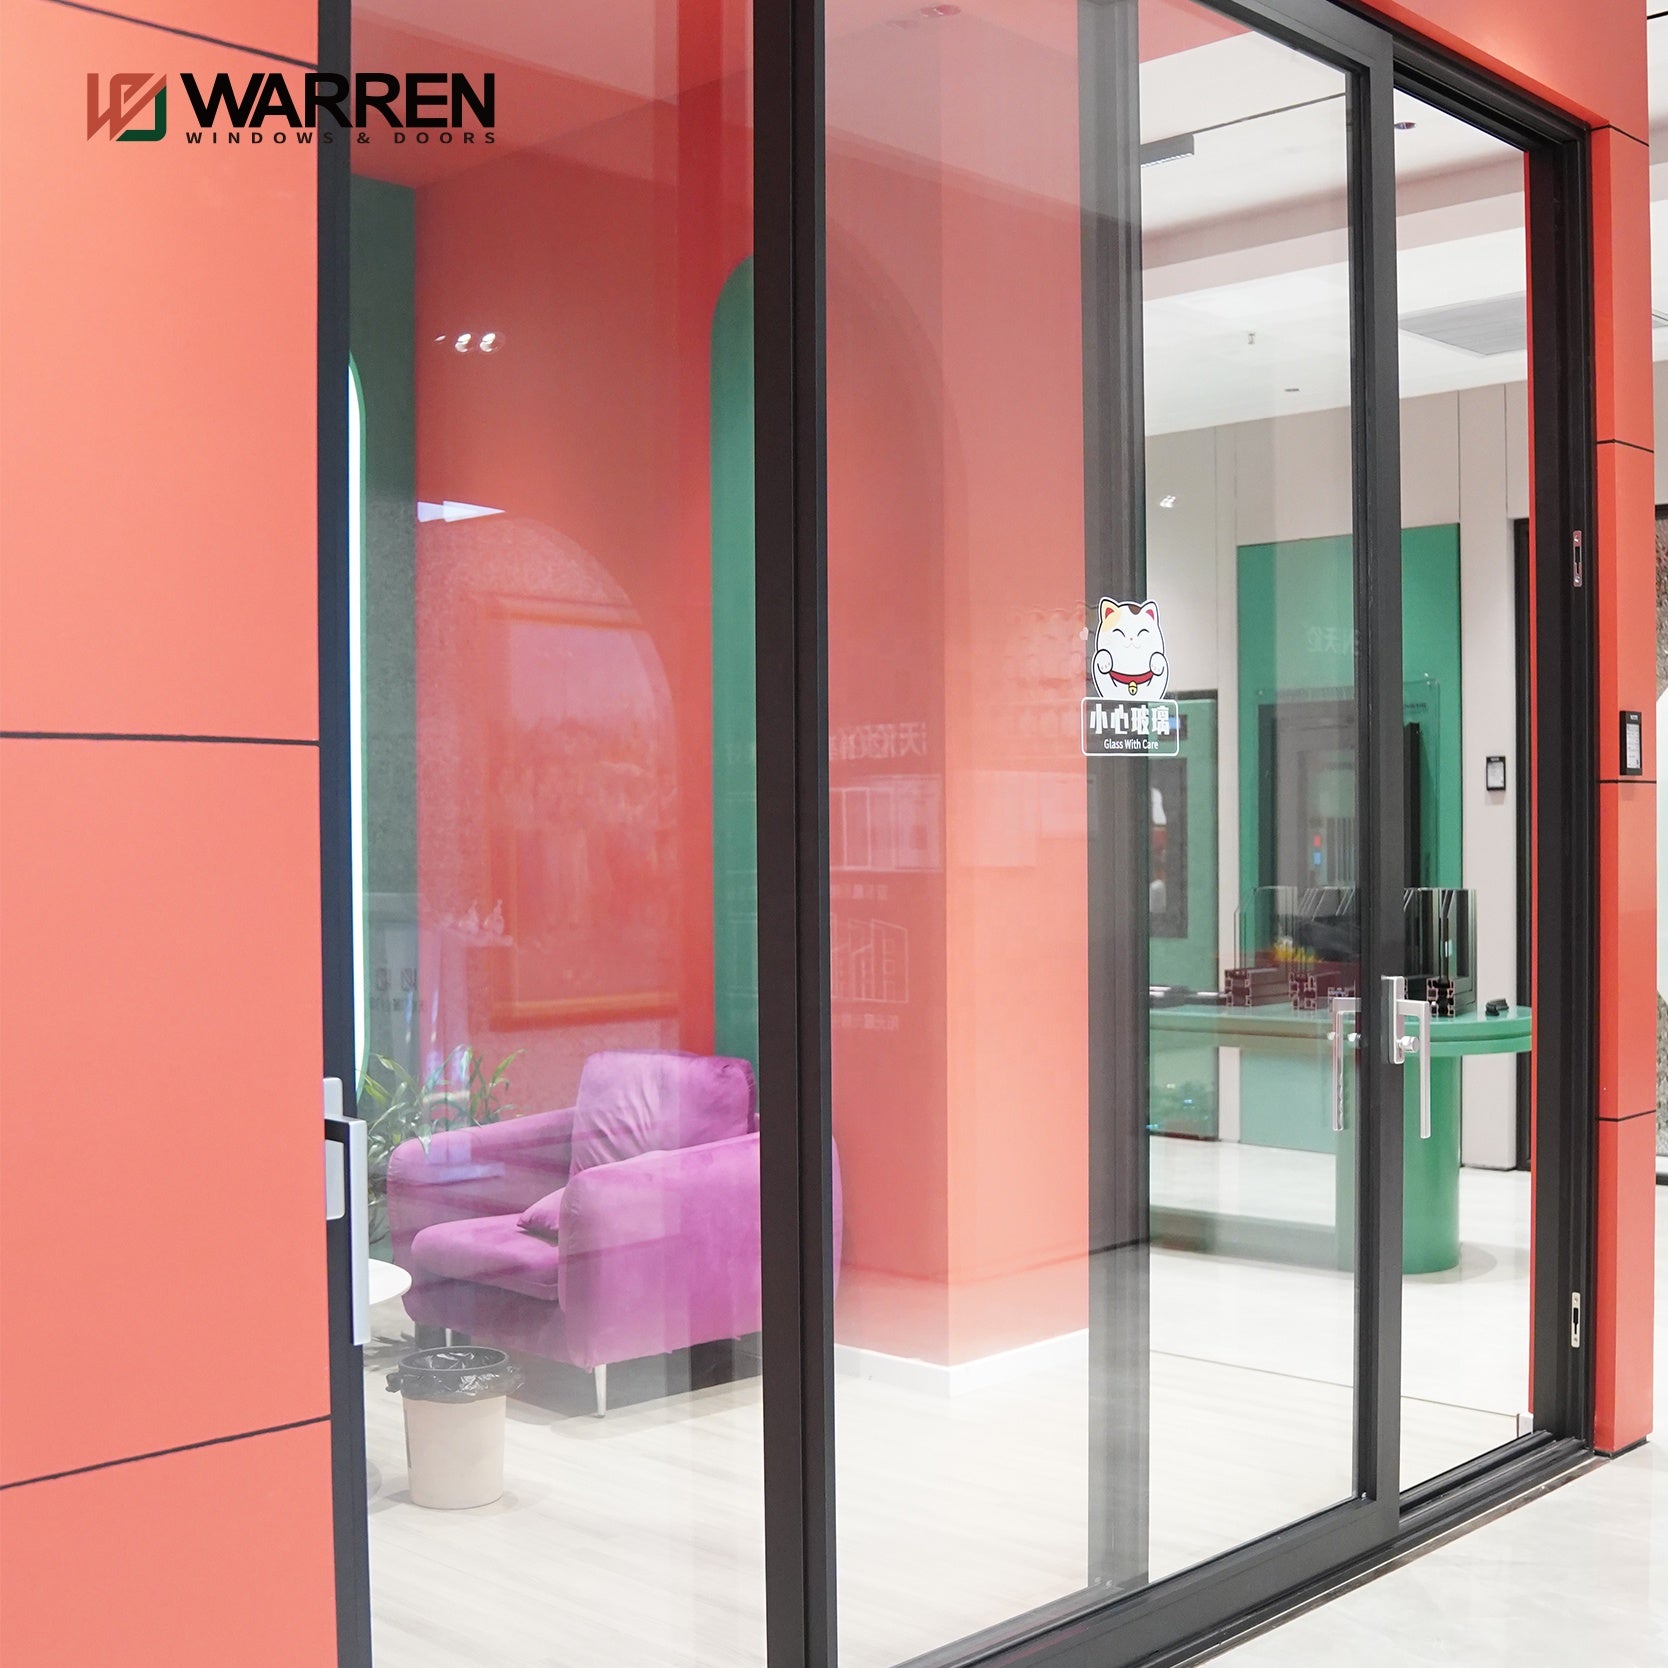 Warren window and doors manufacturing patio entrance sliding doors for sale